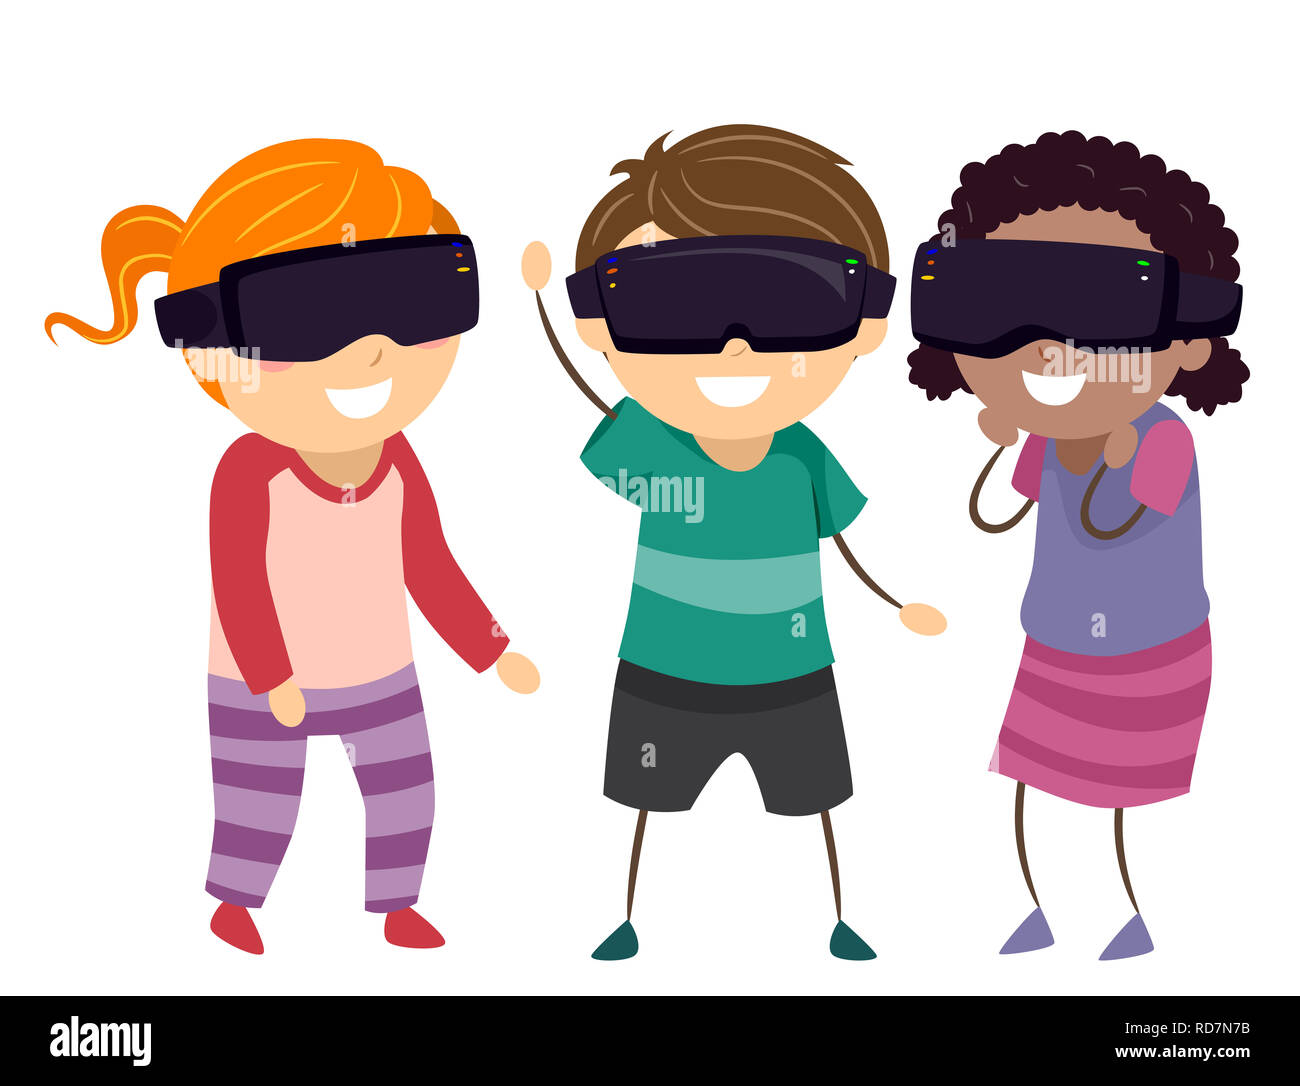 Illustration of Stickman Kids Wearing Virtual Reality Glasses Stock Photo -  Alamy